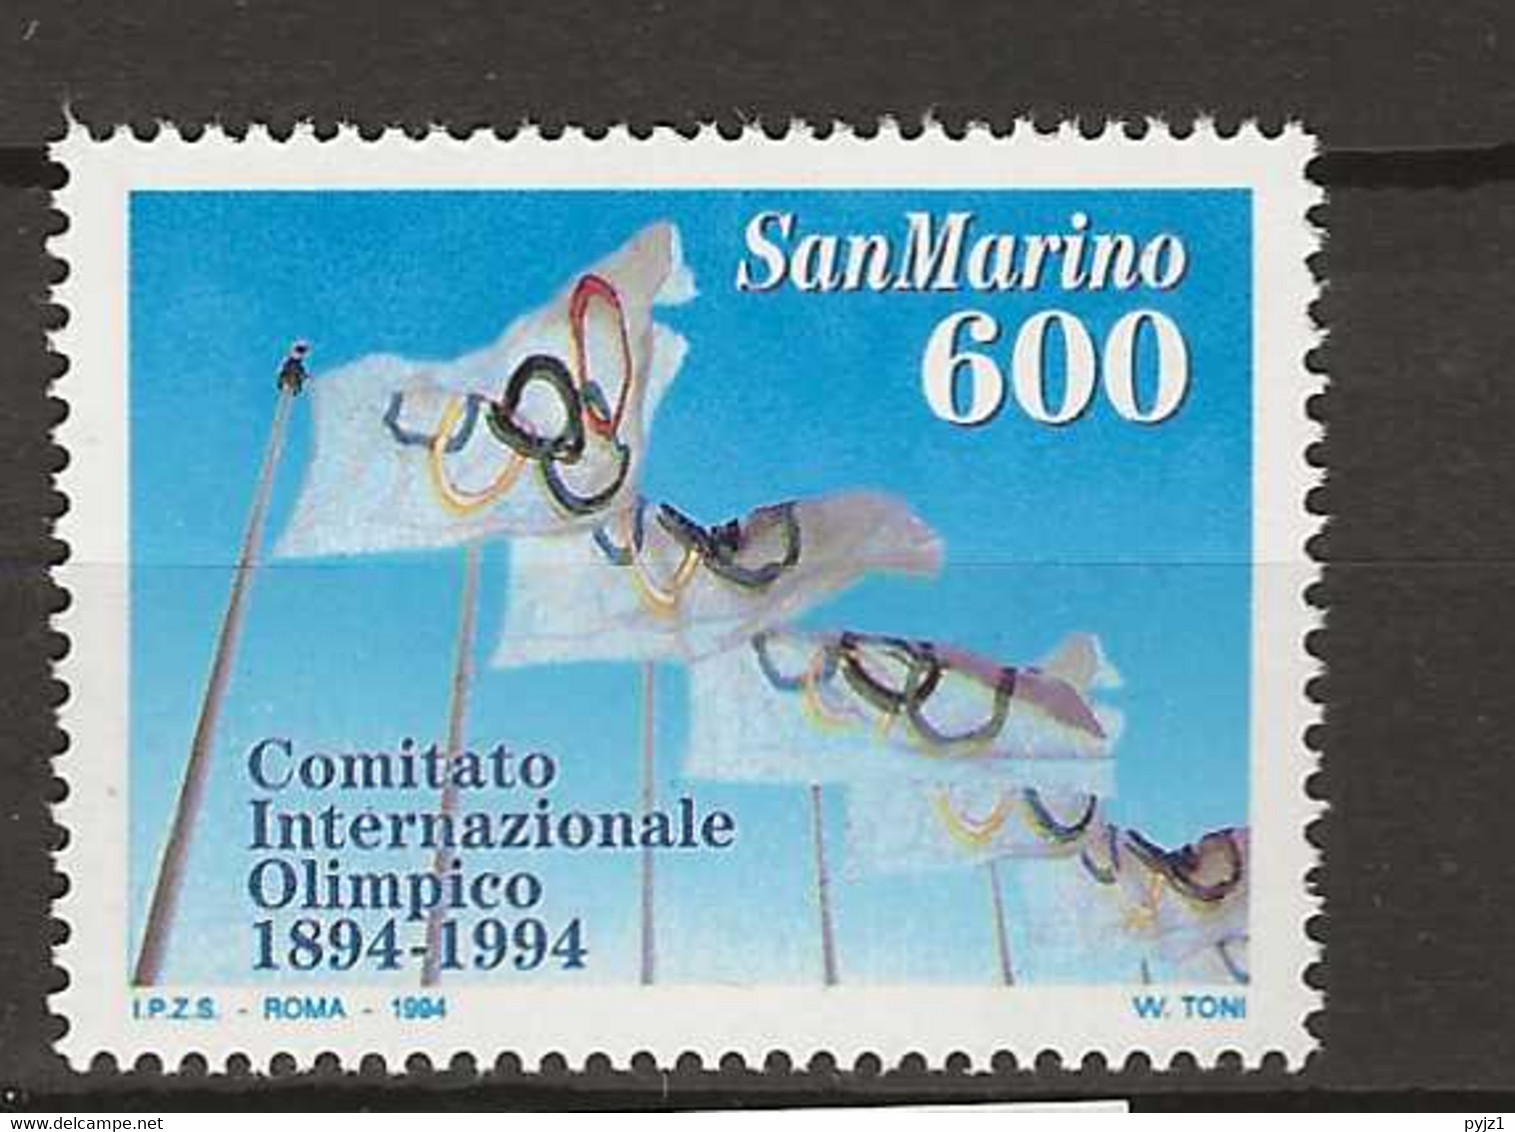 1994 MNH San Marino, Mi 1568 Postfris** - Nuovi